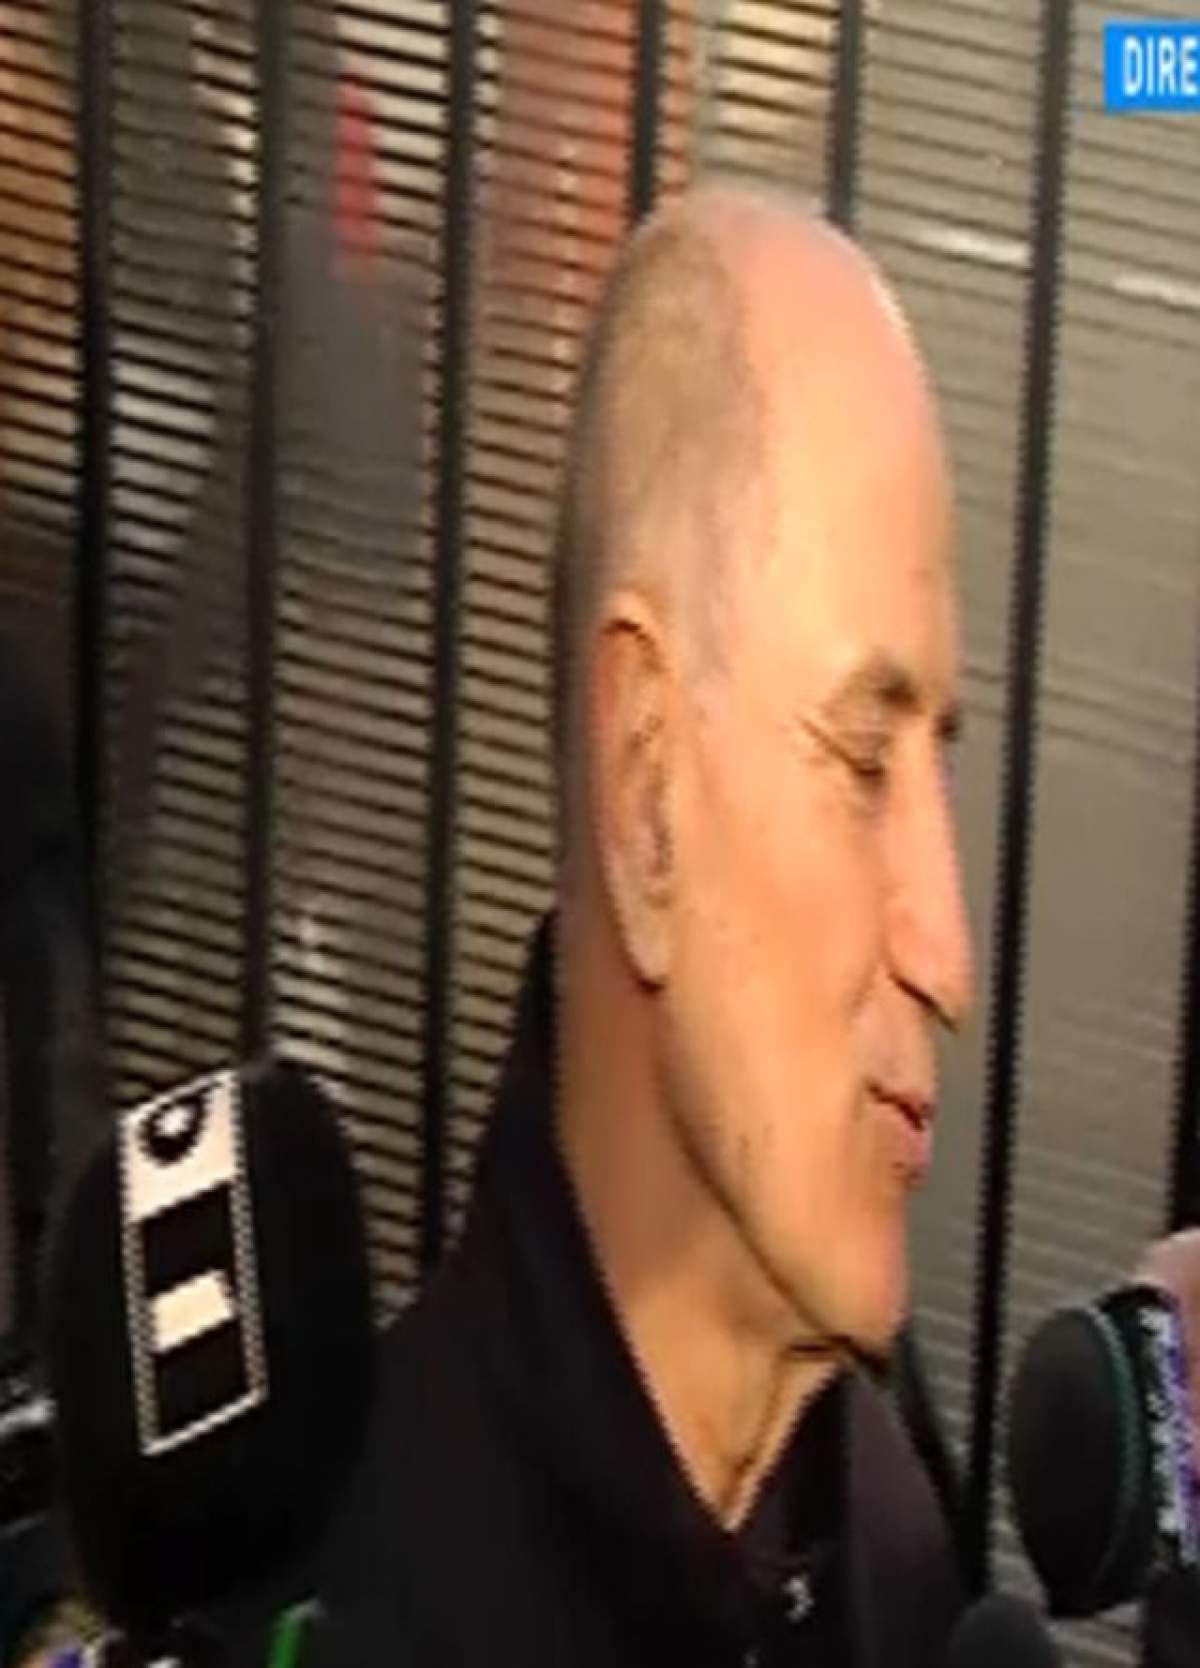 VIDEO / Primele declaraţii şi primele imagini cu George Copos după eliberare: "Merg direct la spital"